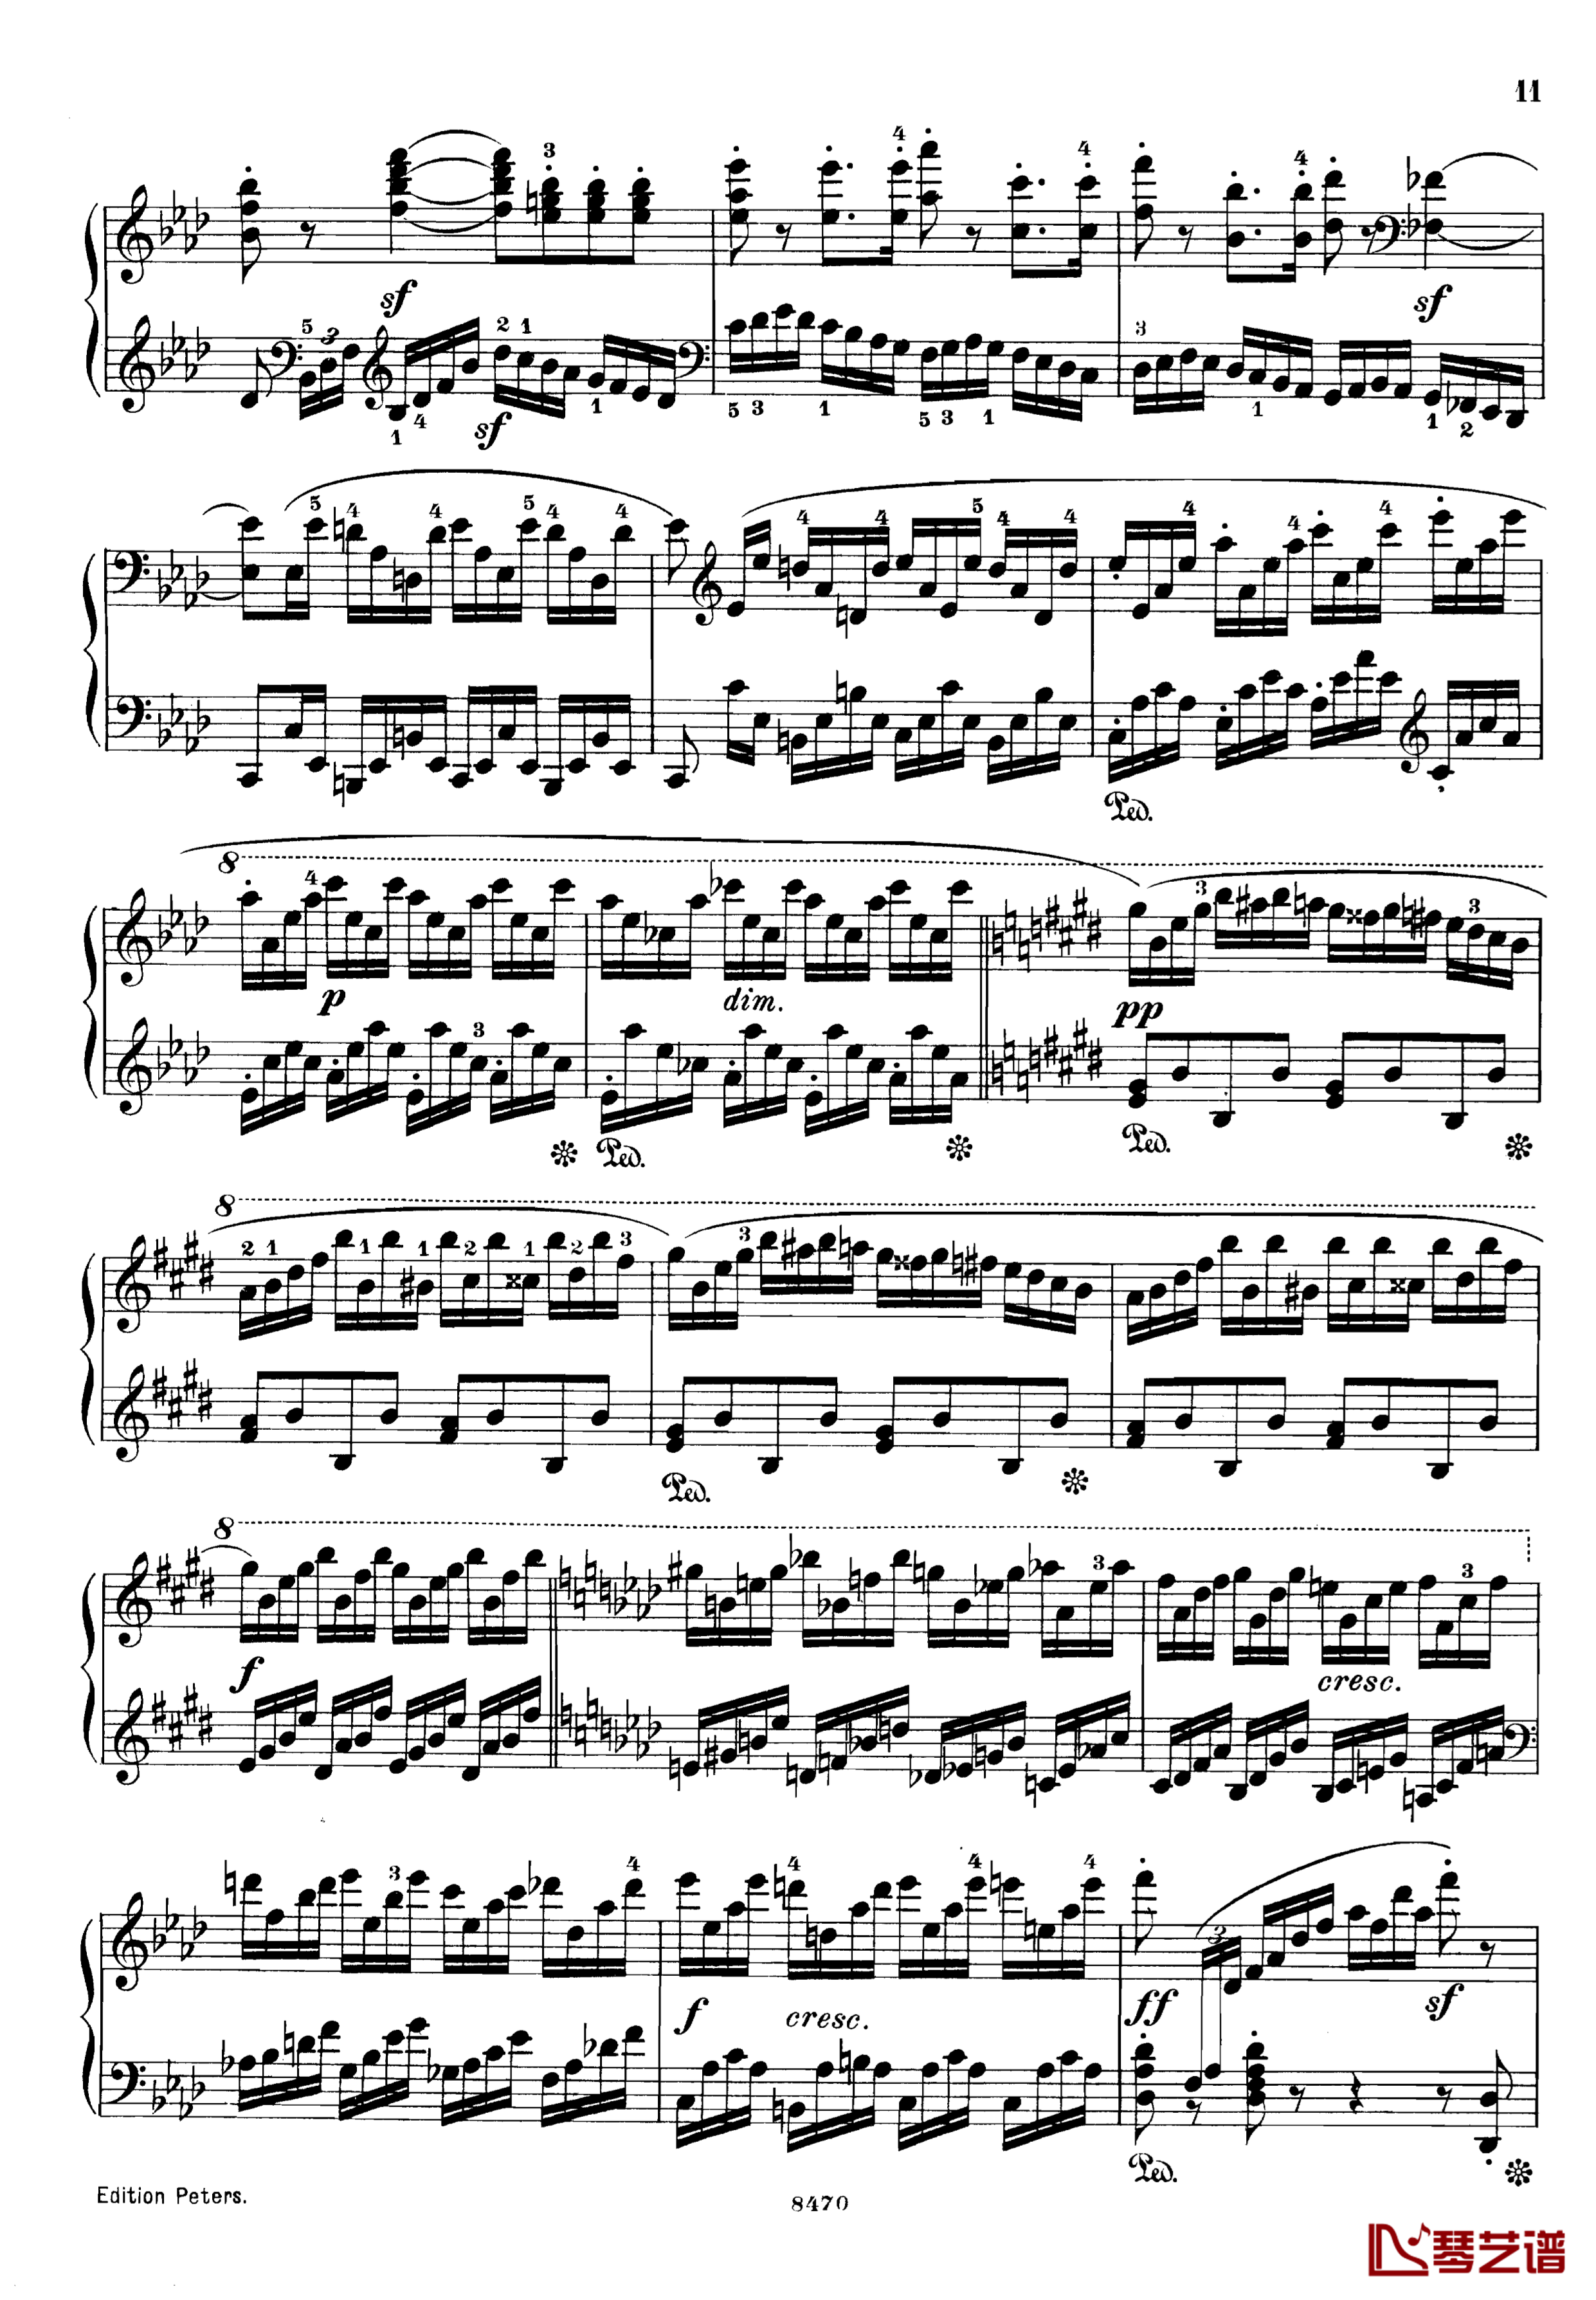 升c小调第三钢琴协奏曲Op.55钢琴谱-克里斯蒂安-里斯